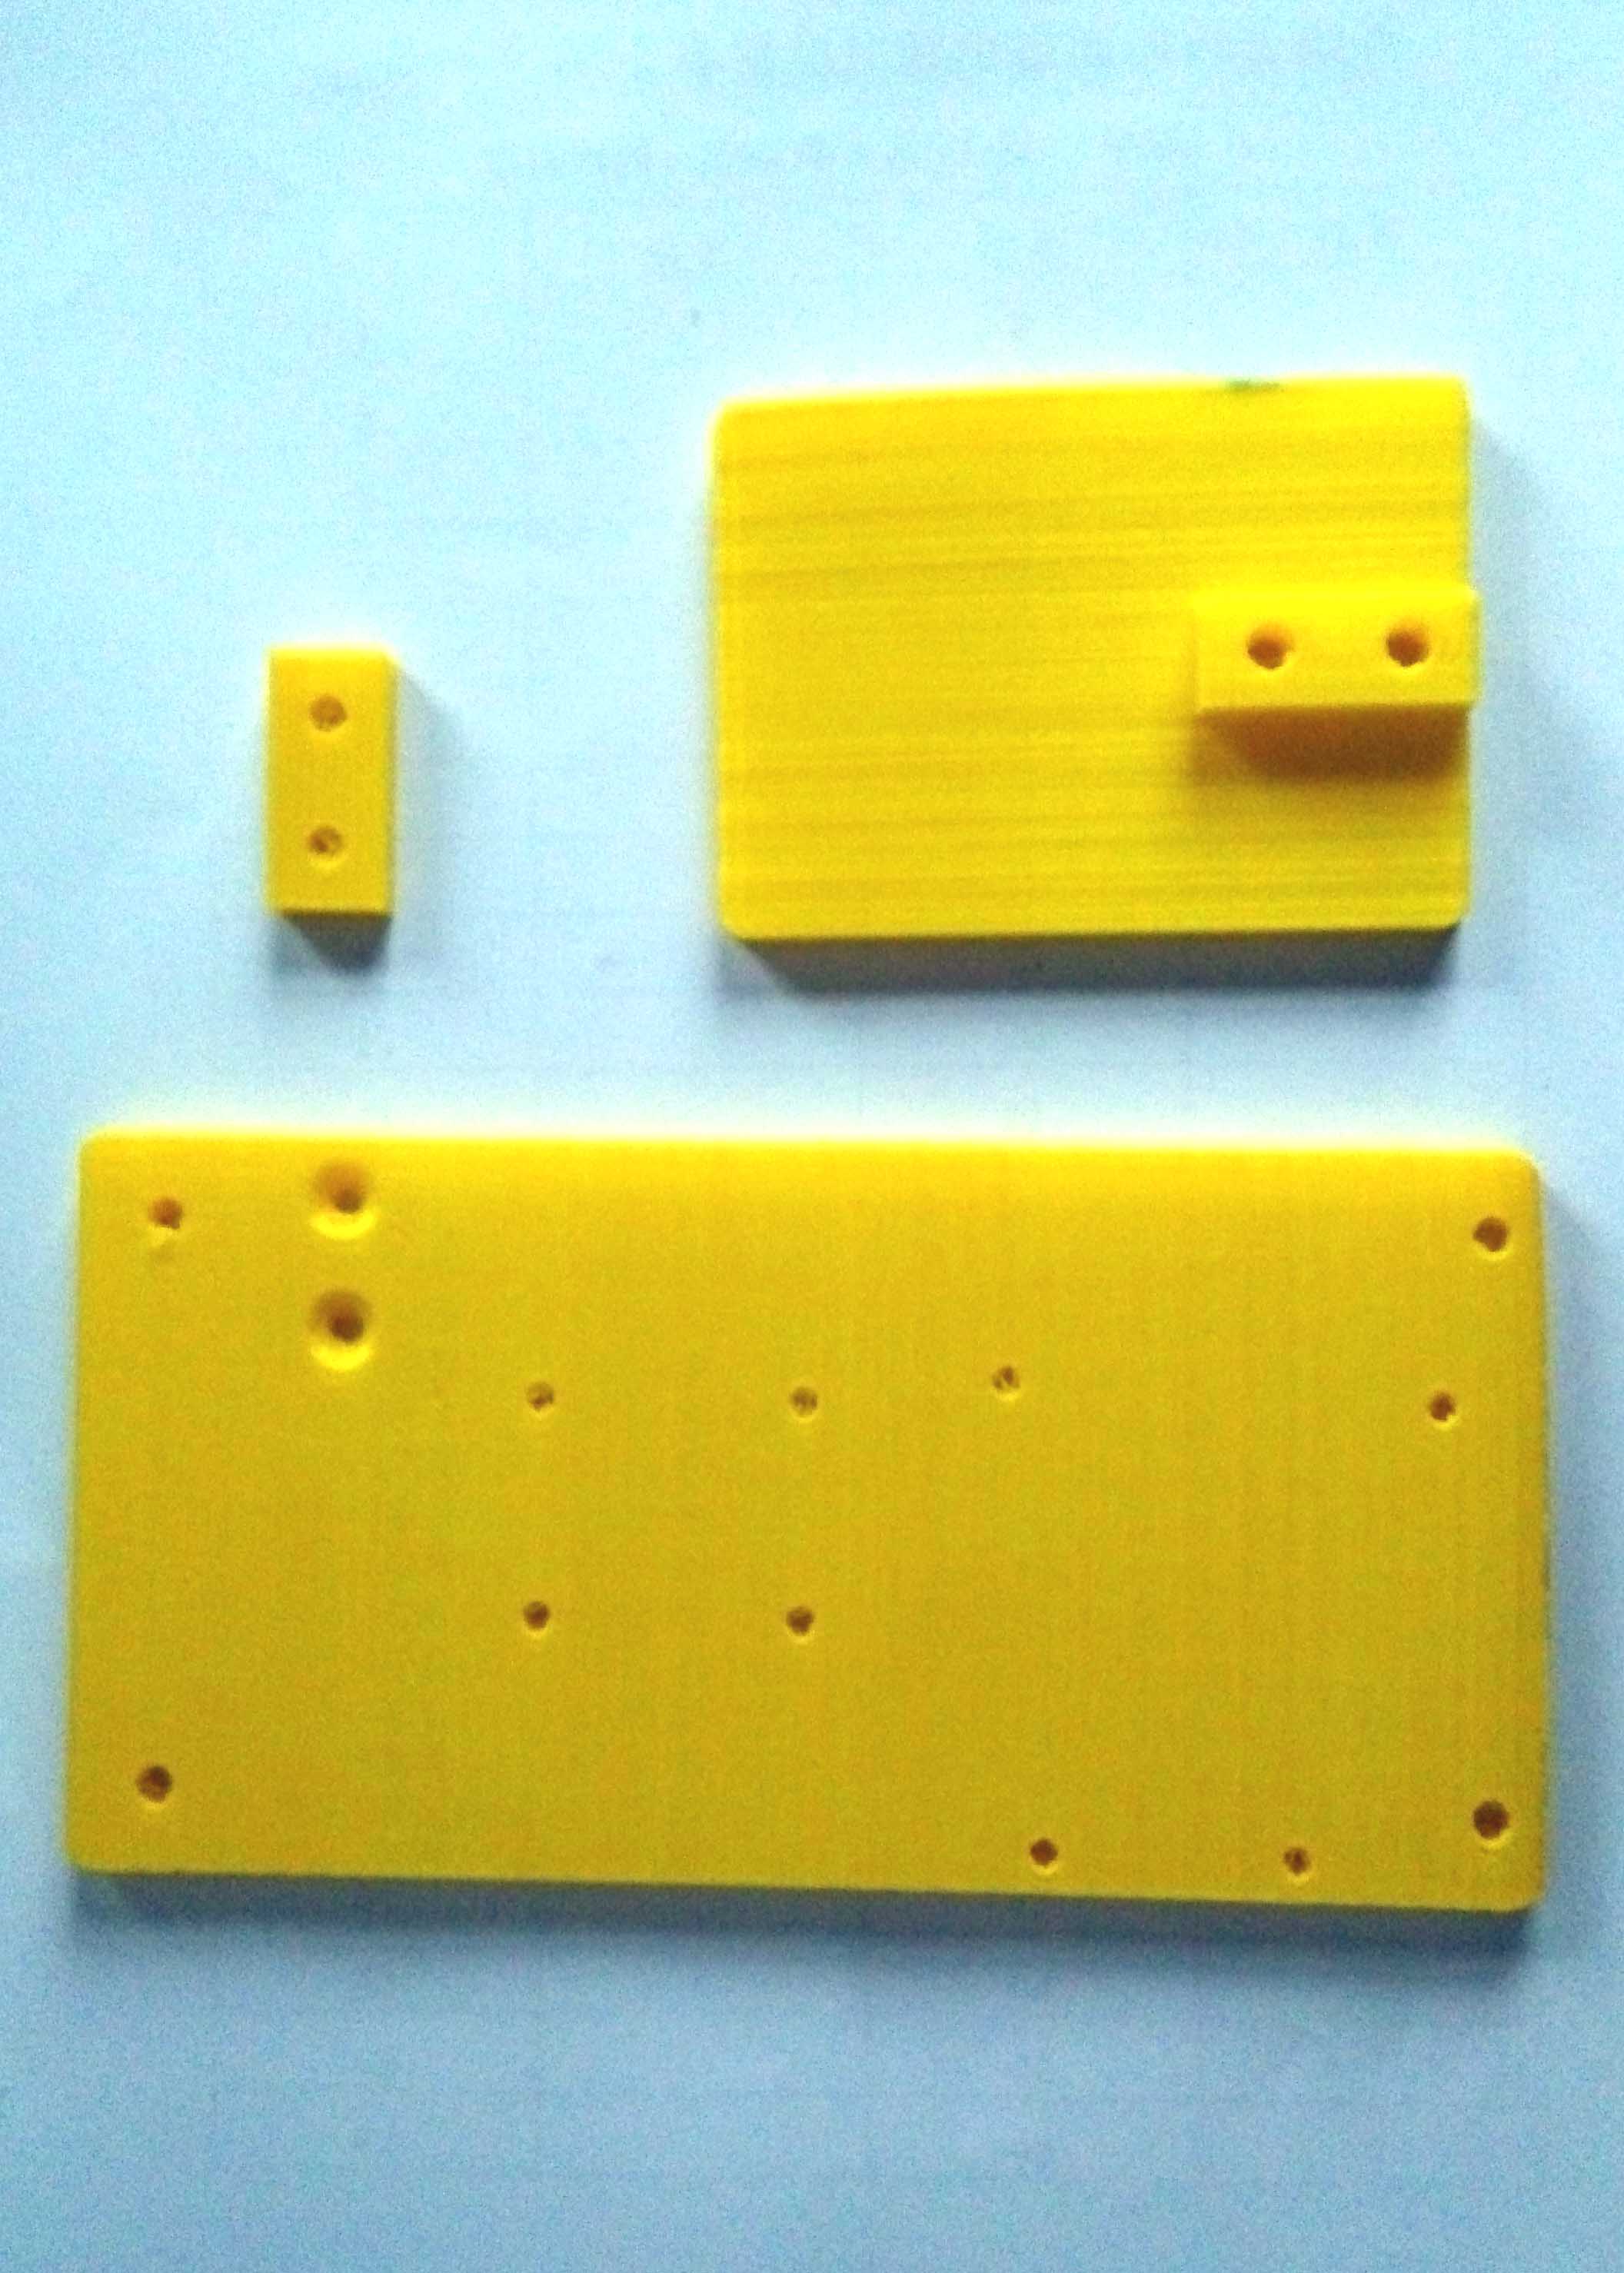 重量传感器模块 （电子称）3D打印部件图1